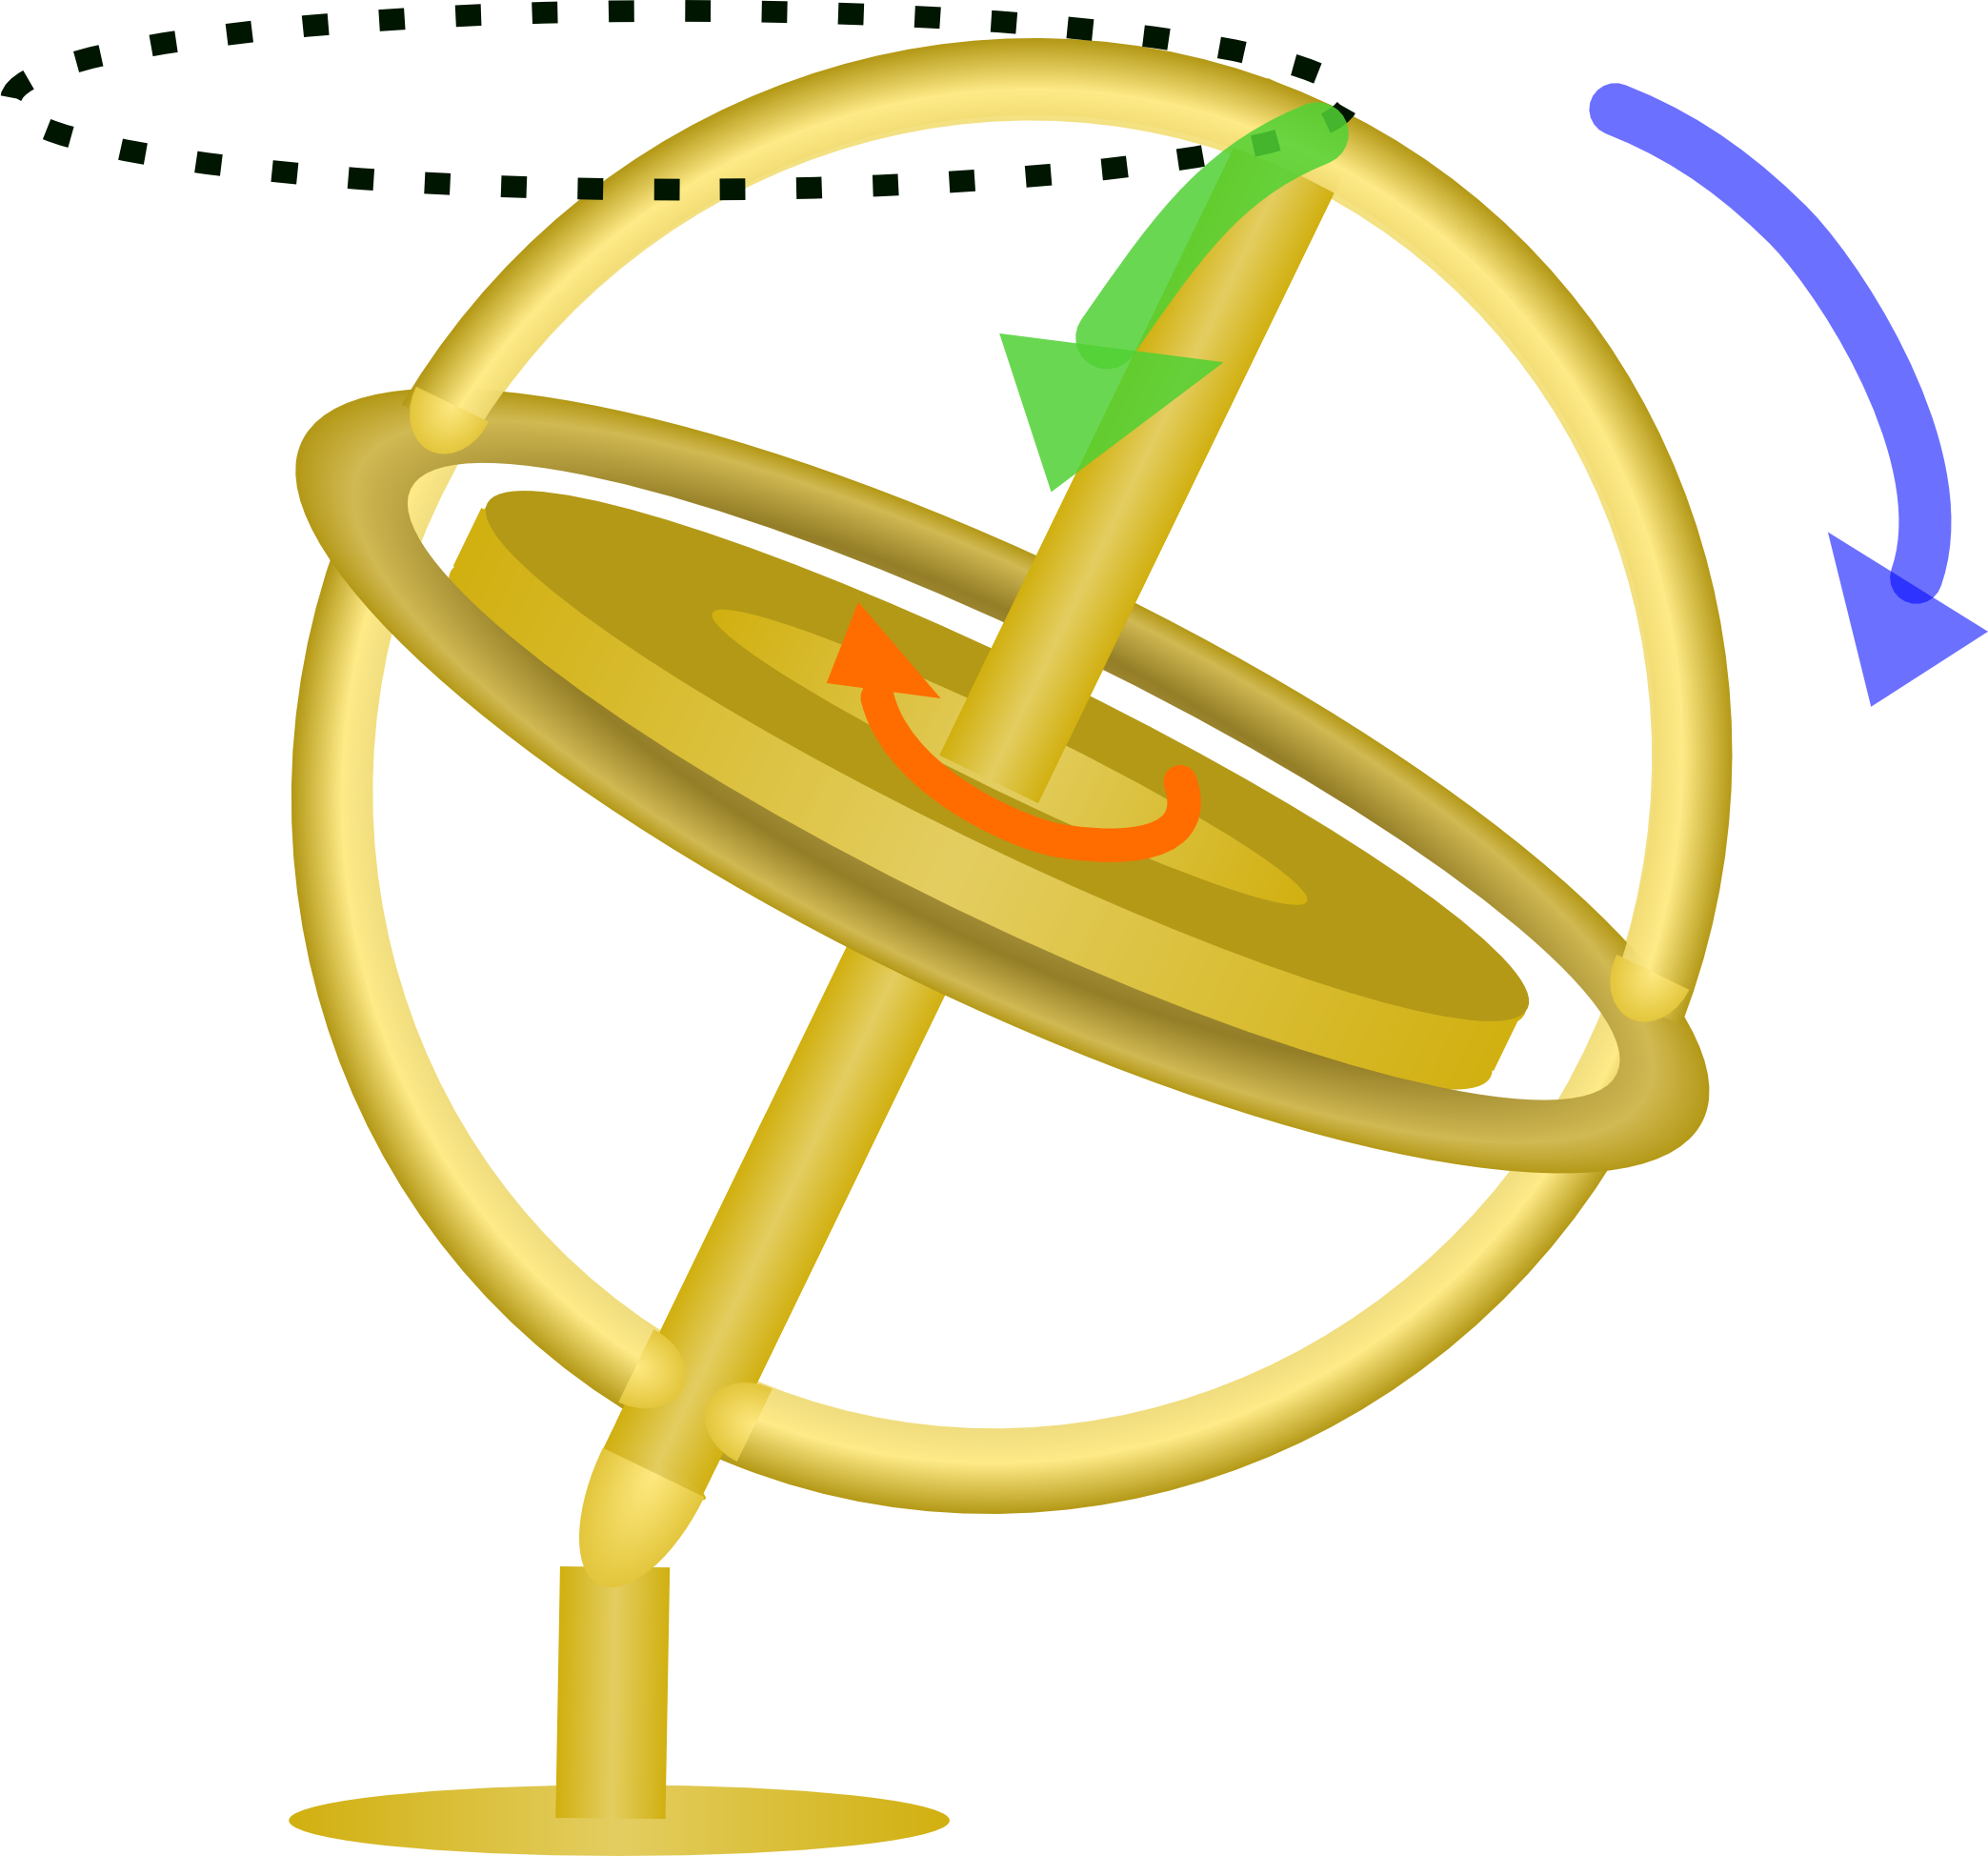 A gyroscope